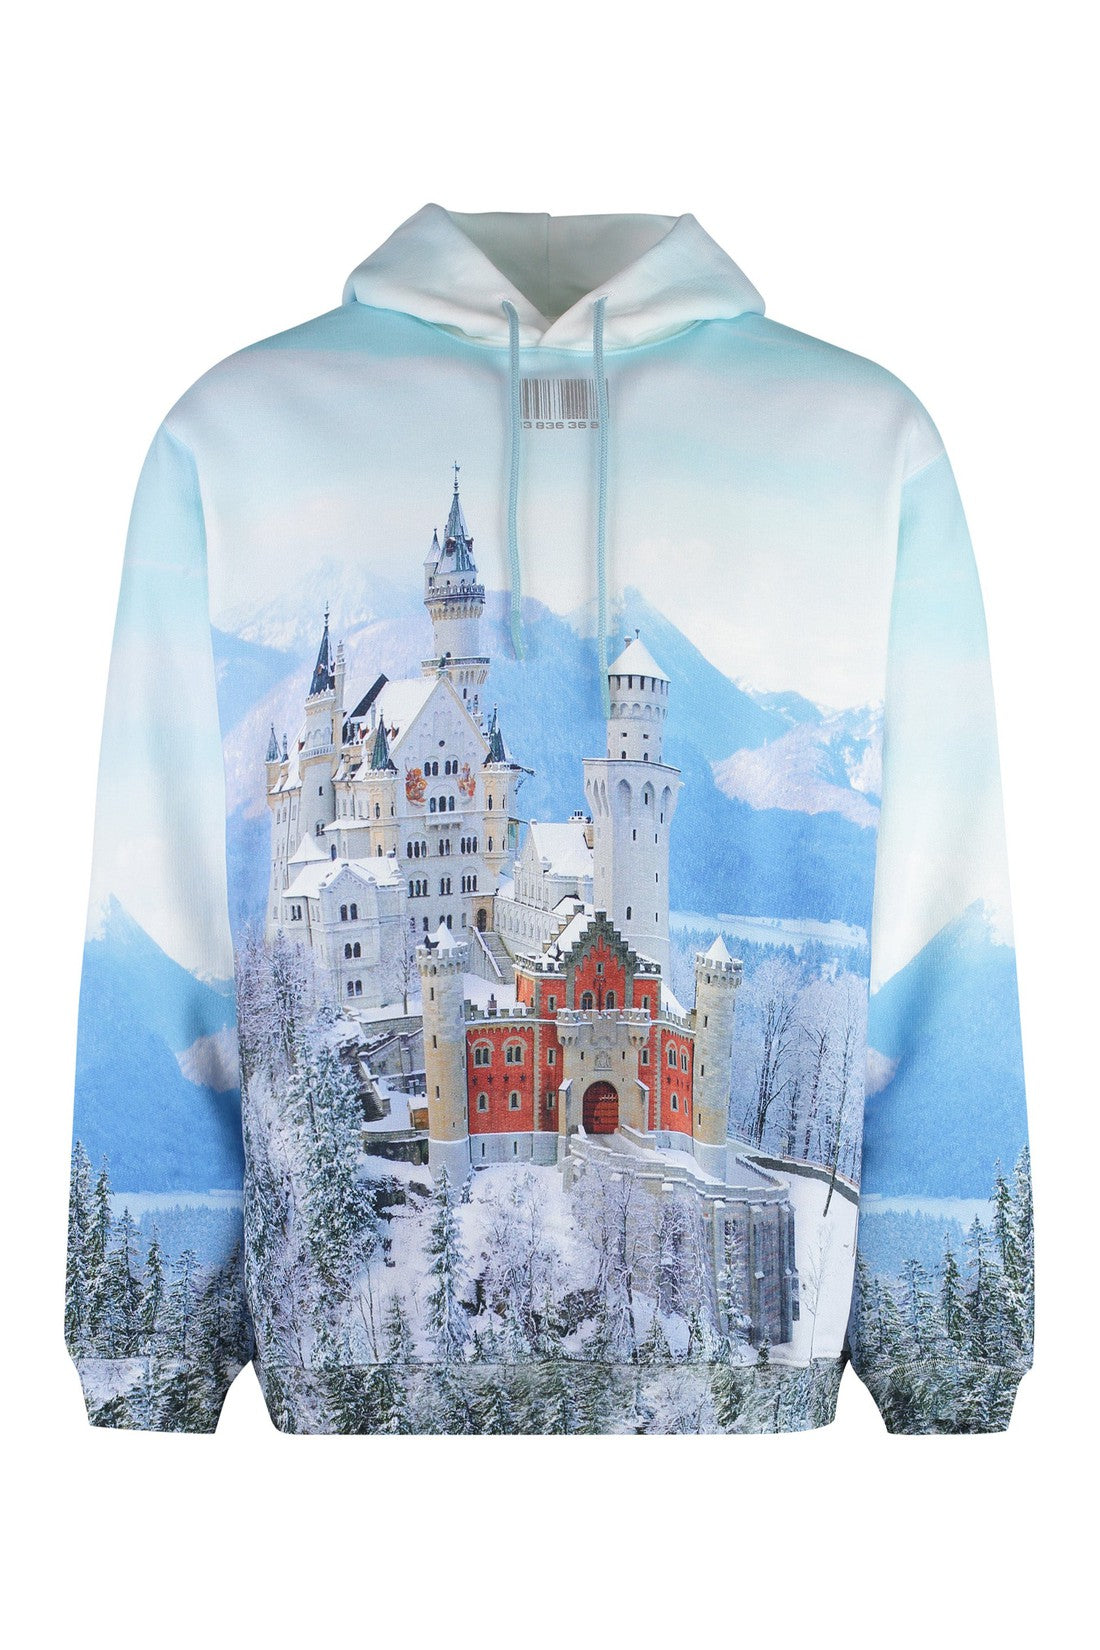 Neuschwanstein Winter printed cotton hoodie